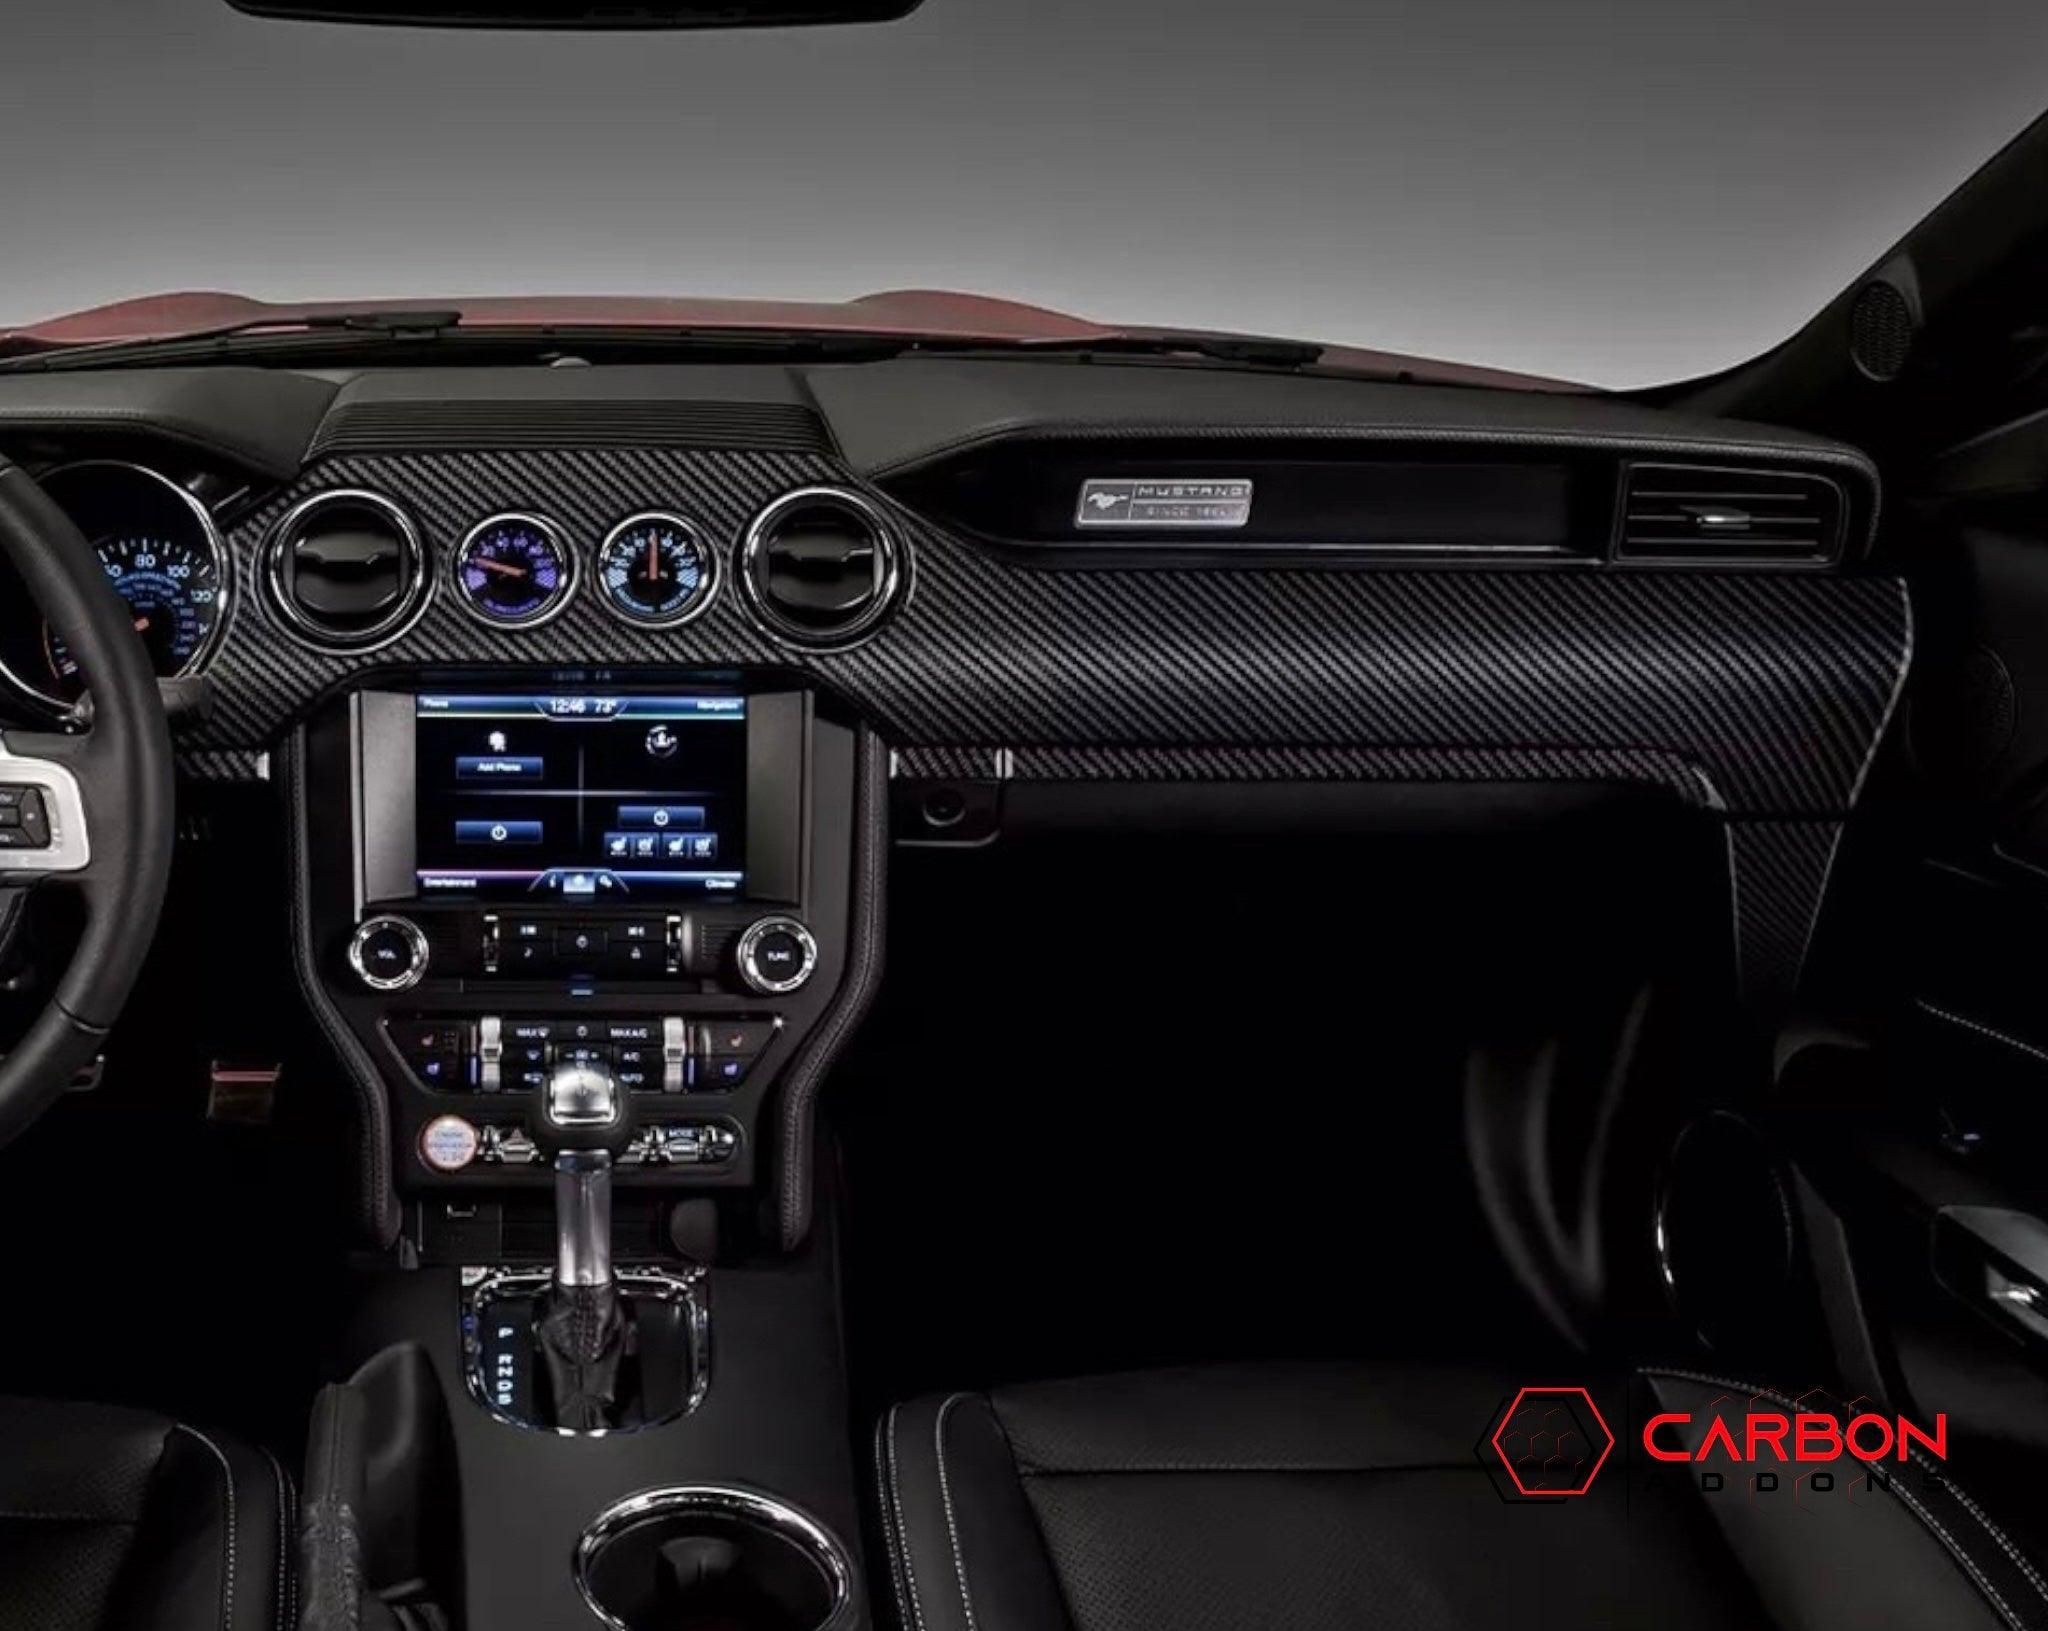 Carbon Fenster Abdeckung für Ford Mustang